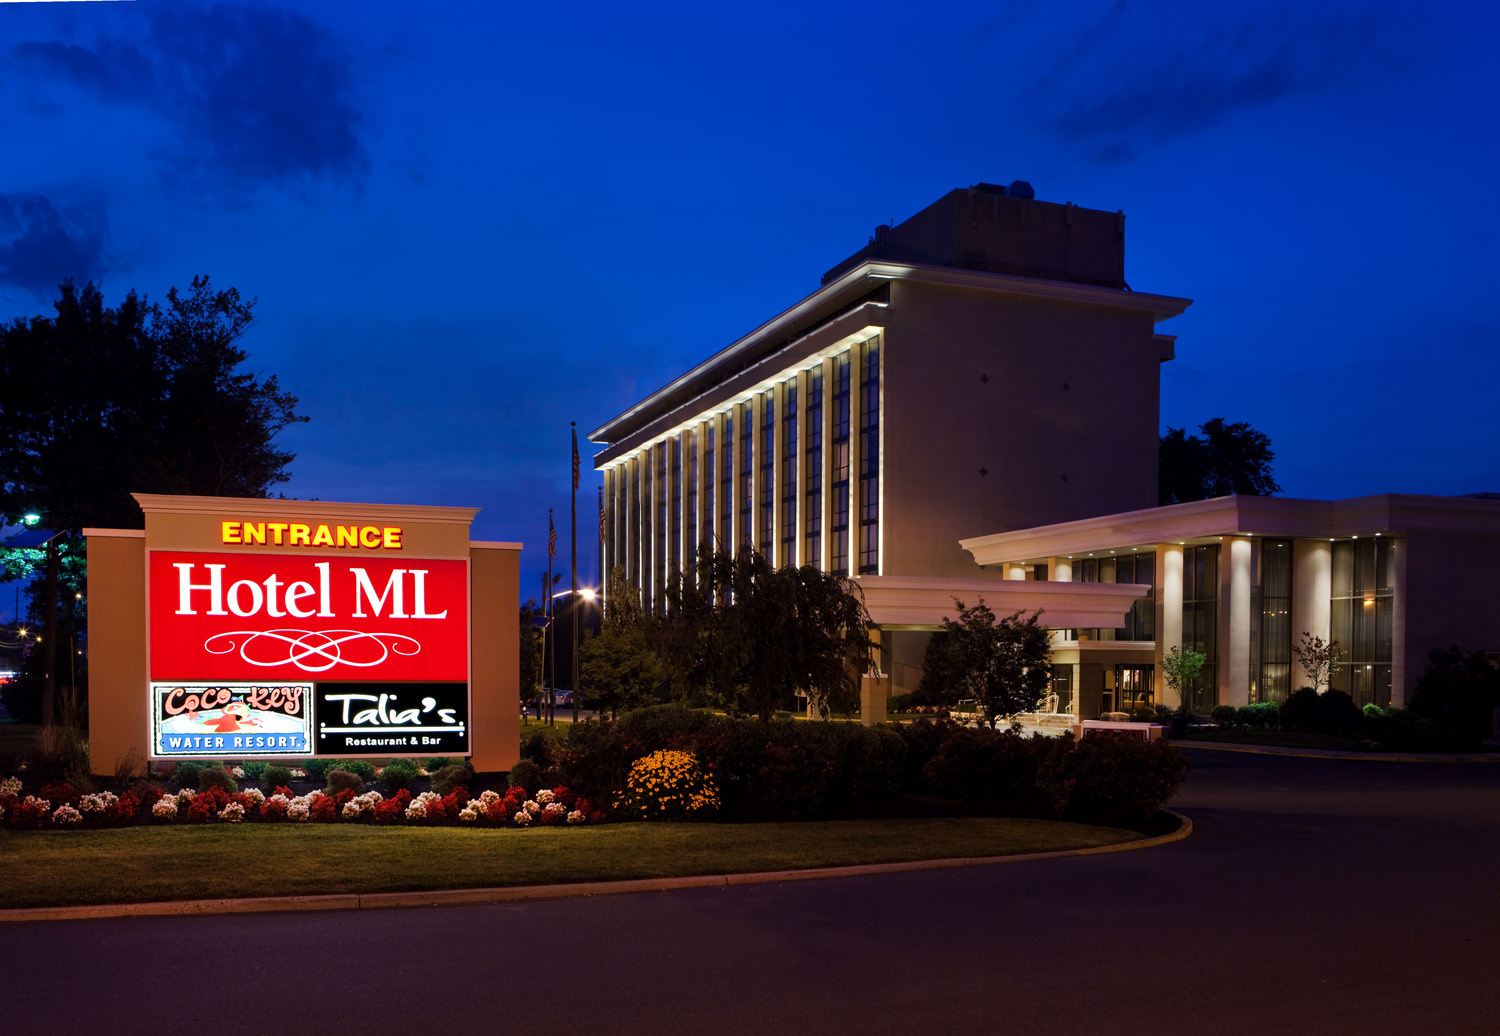 The Hotel ML Mount Laurel